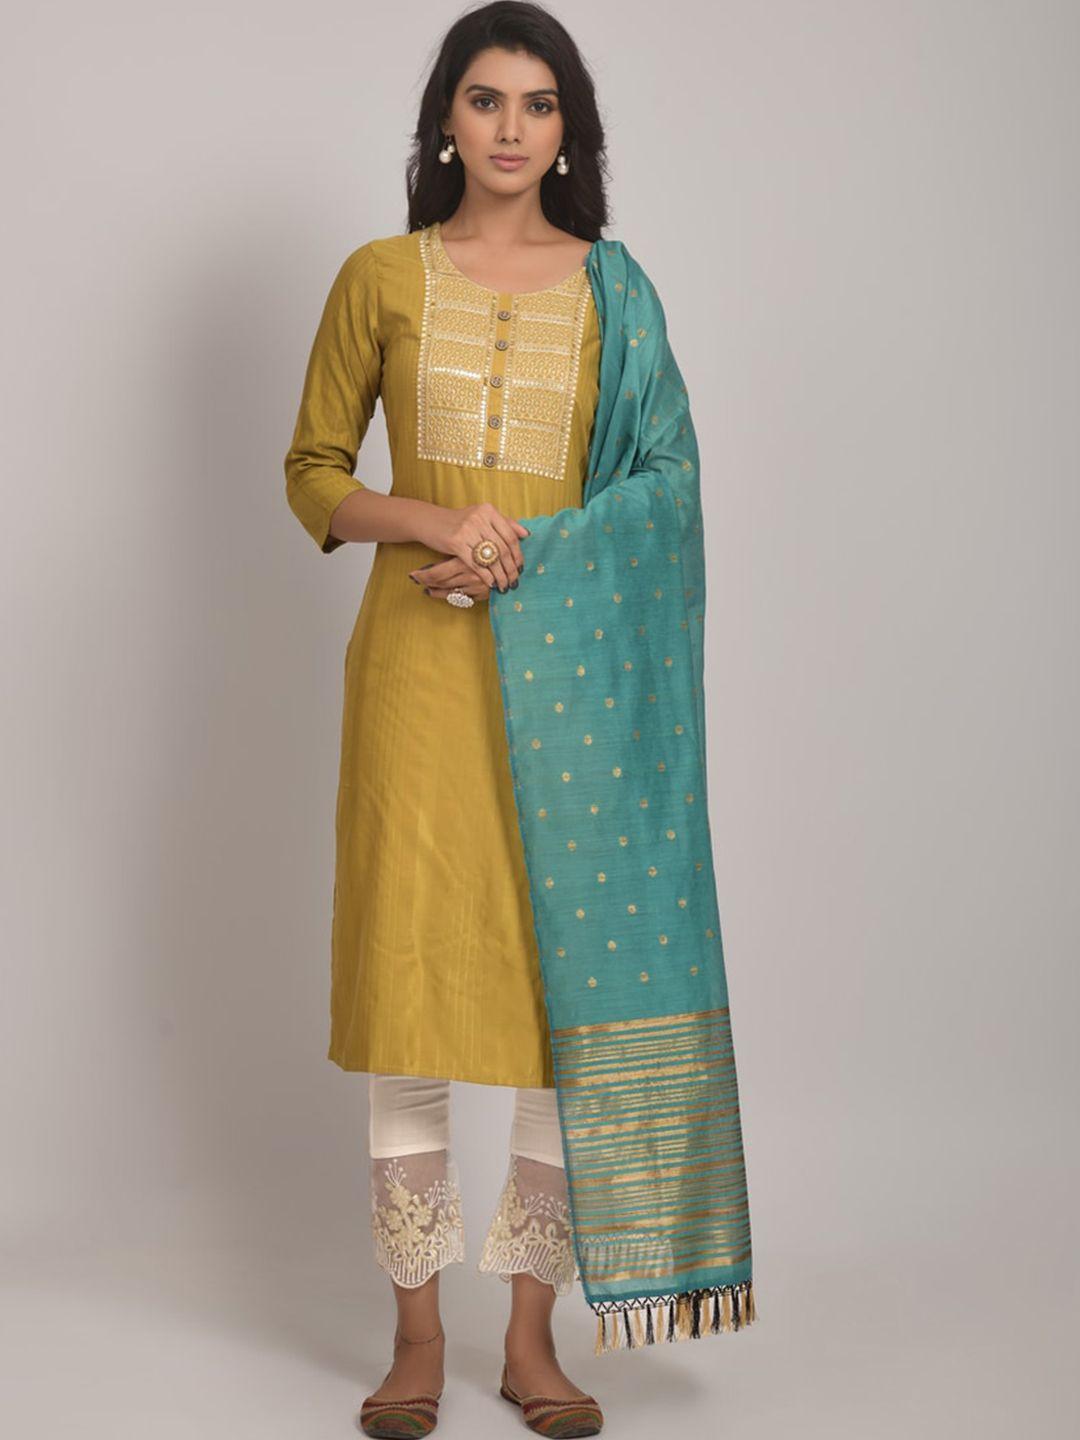 jinax women yellow floral embroidered regular kurti with pyjamas & with dupatta